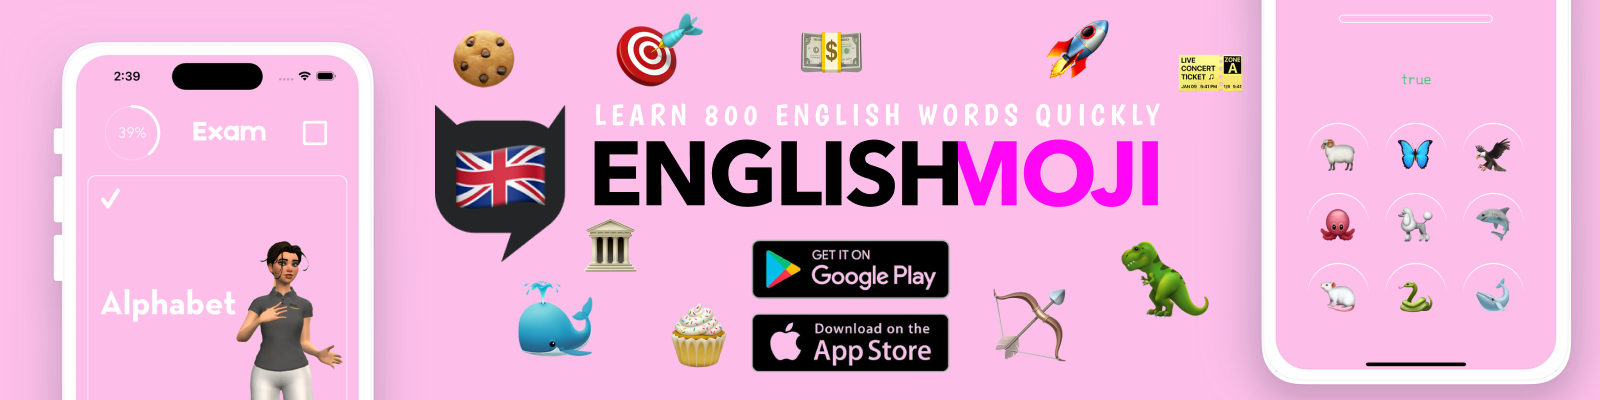 EnglishMoji!